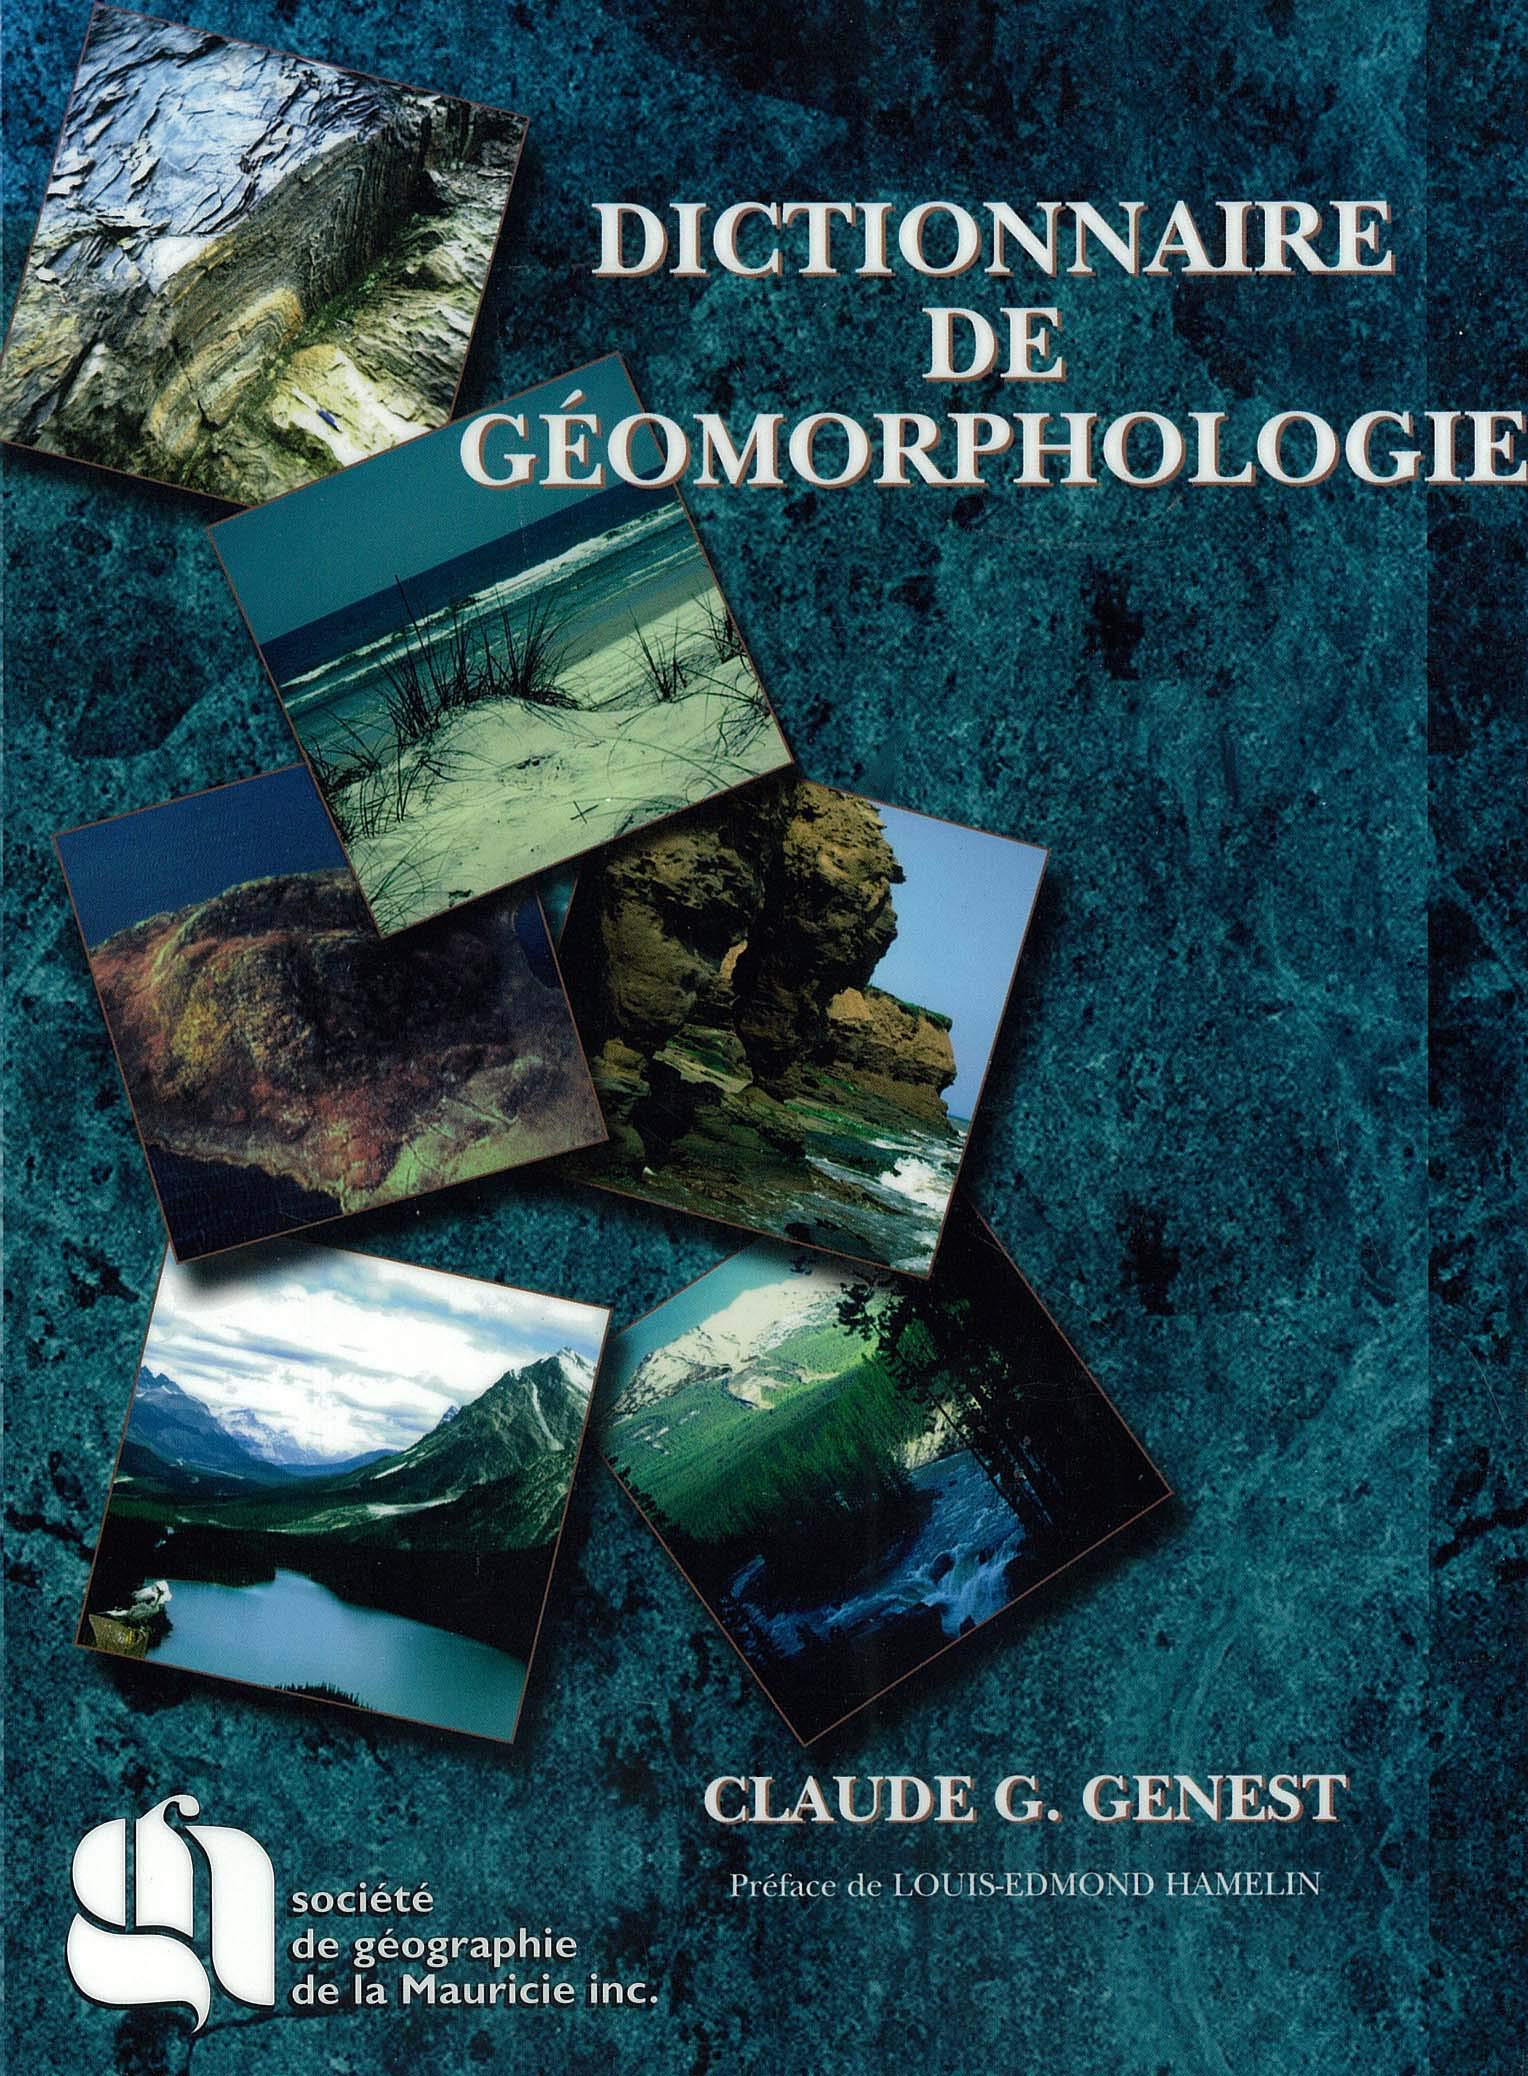 Dictionnaire de géomorphologie - Claude G. Genest